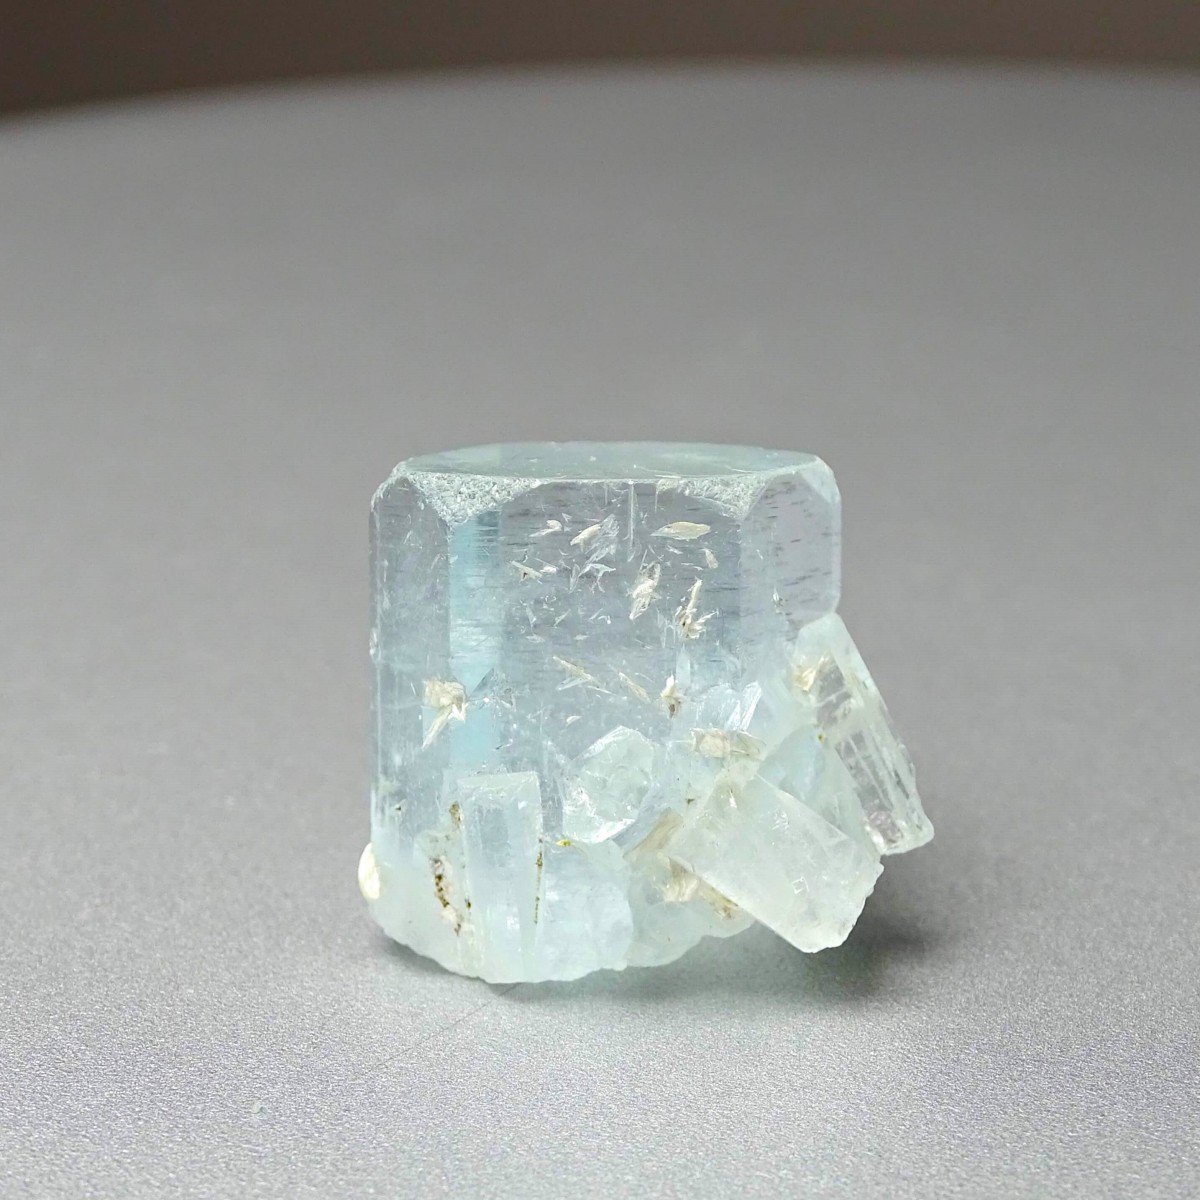 Aquamarin natürlicher Kristall 13,8g, Pakistan